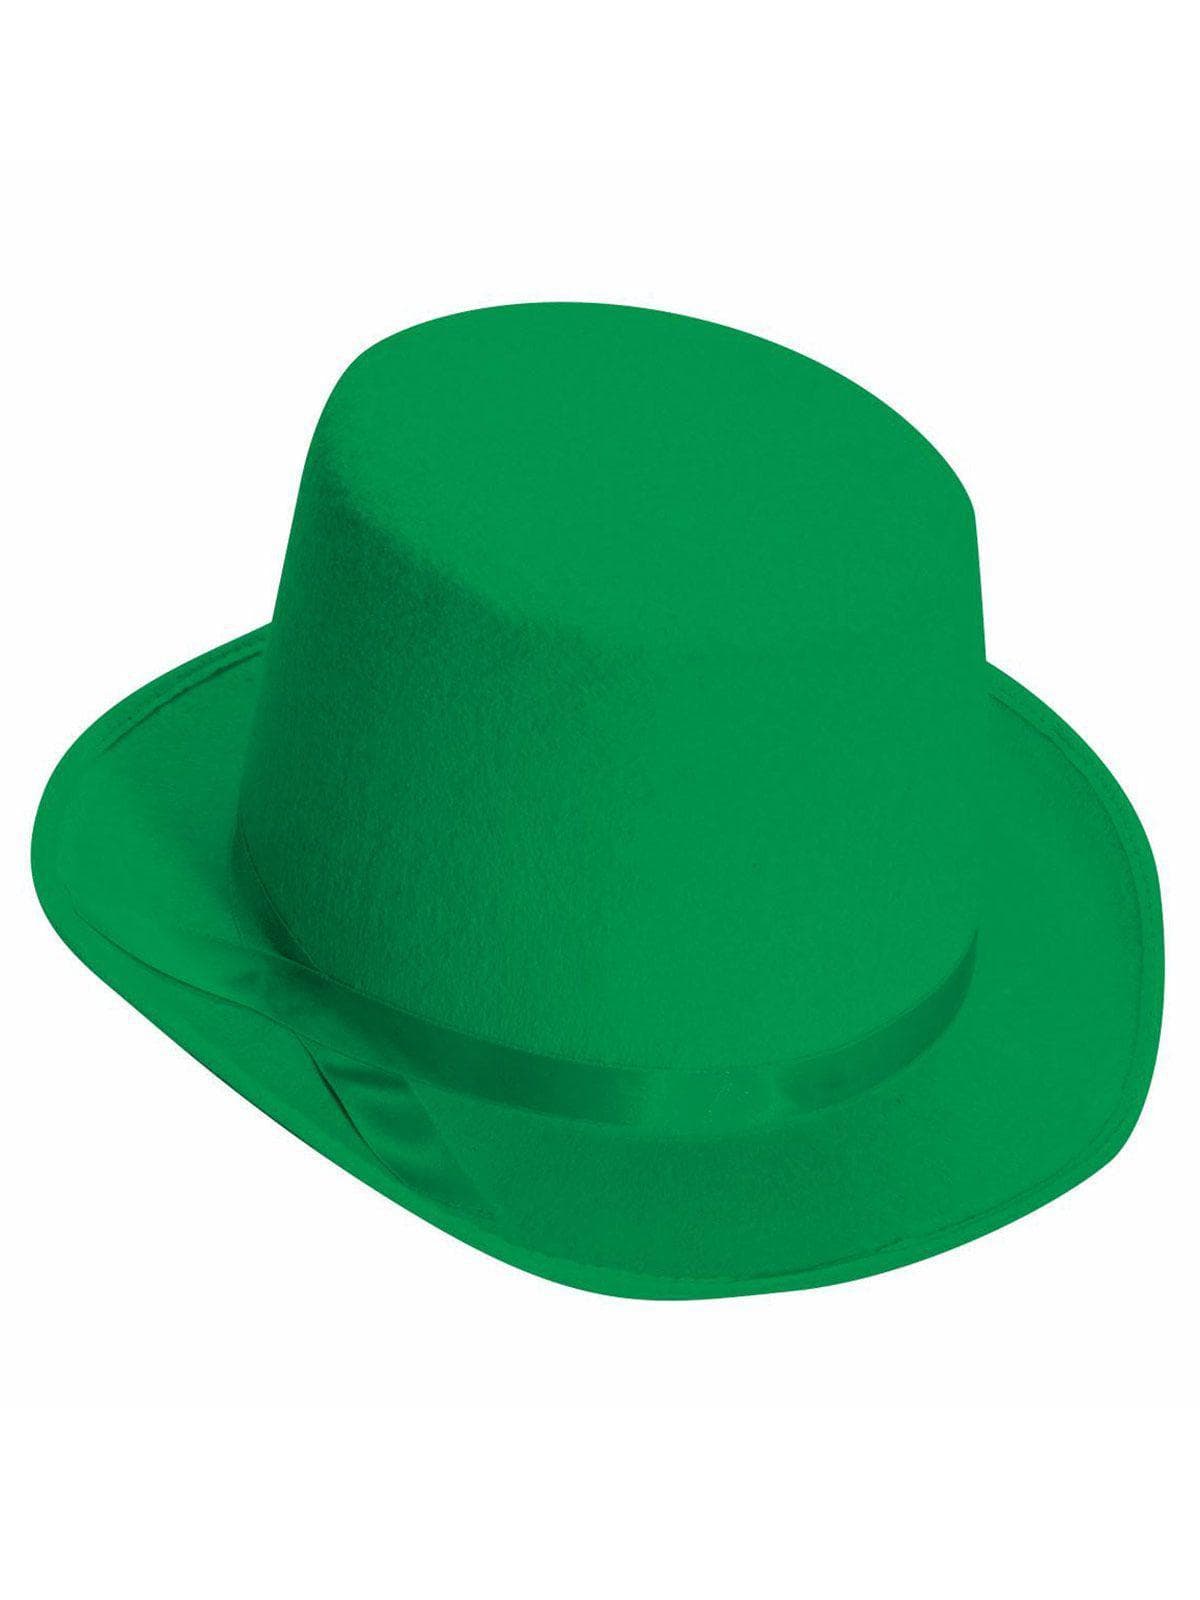 Green Top Hat - costumes.com